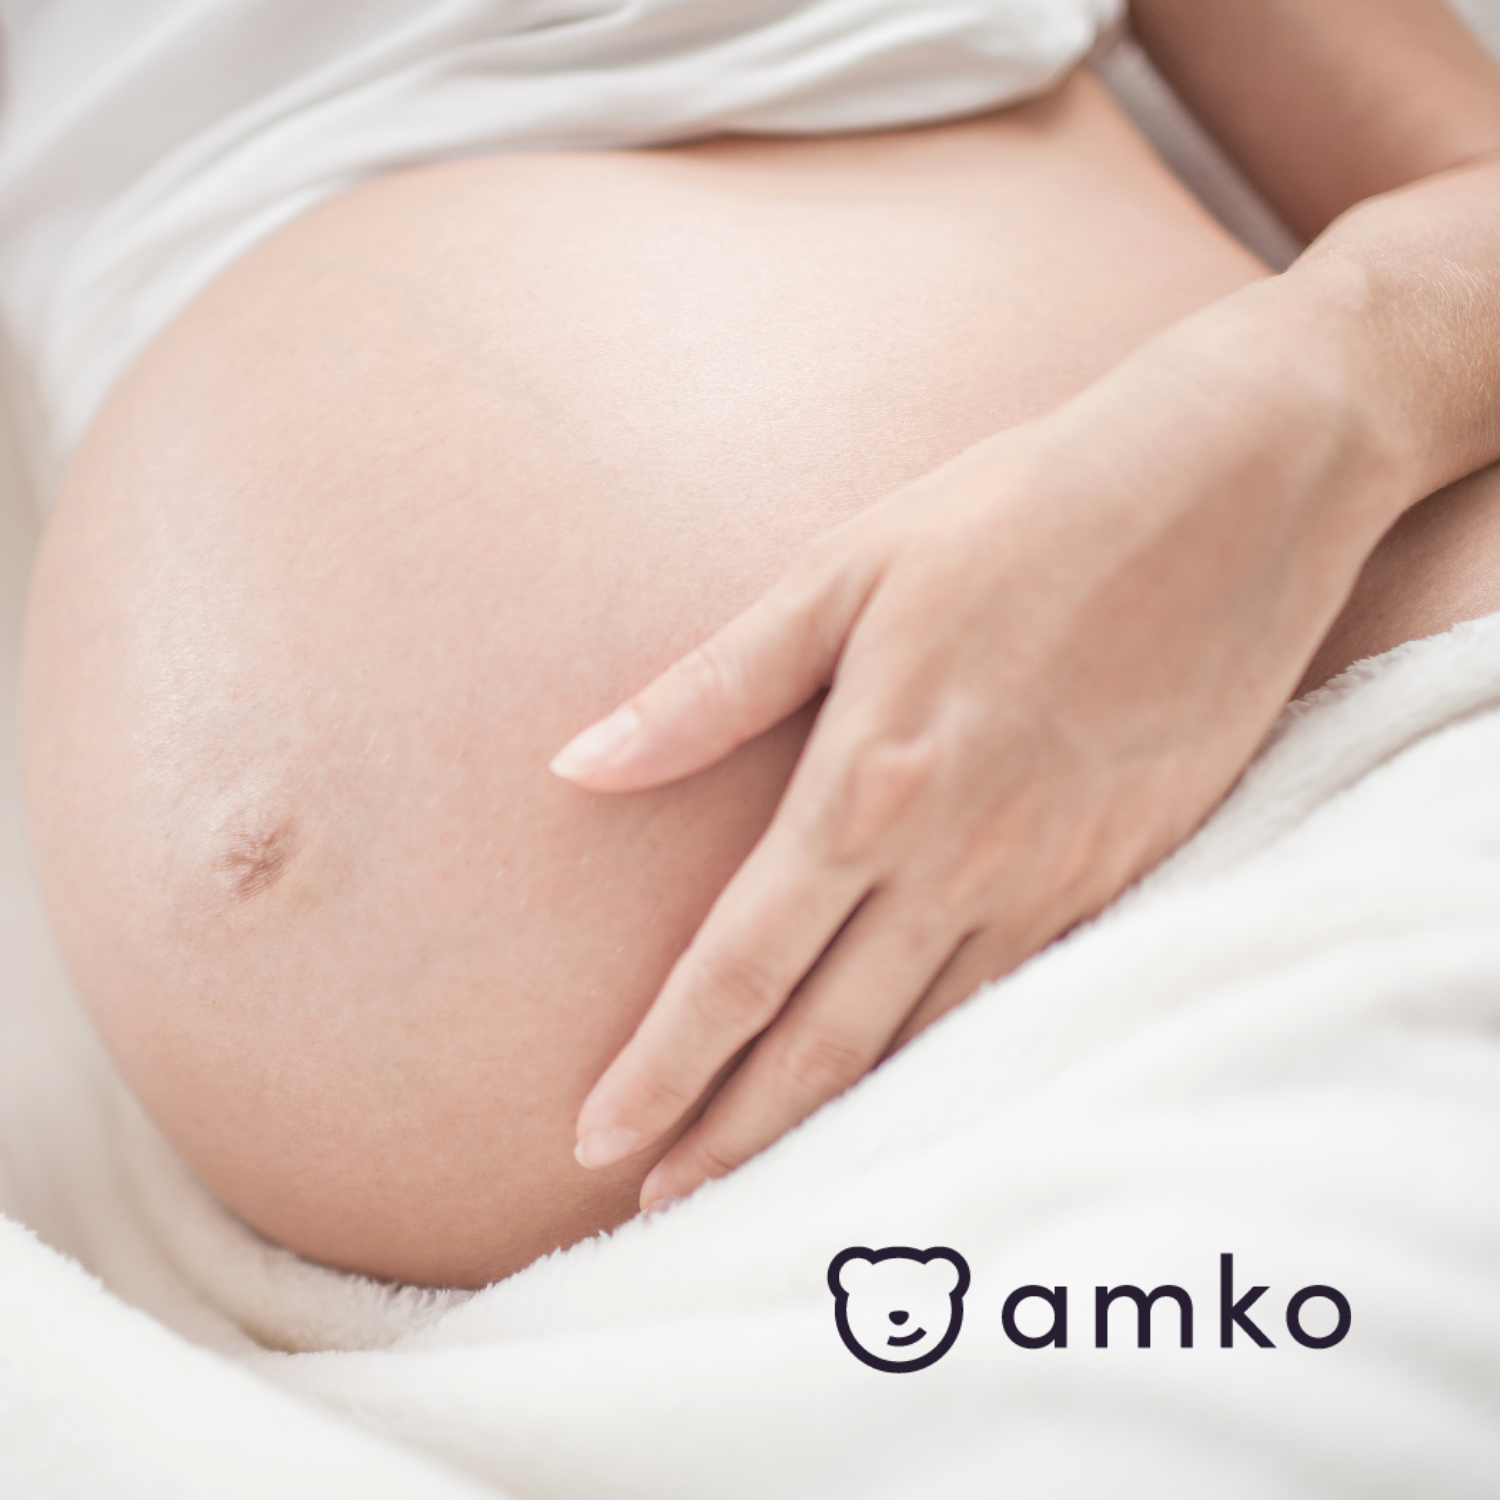 24 tydzień ciąży! Jak wygląda dziecko? Zmiany w organizmie